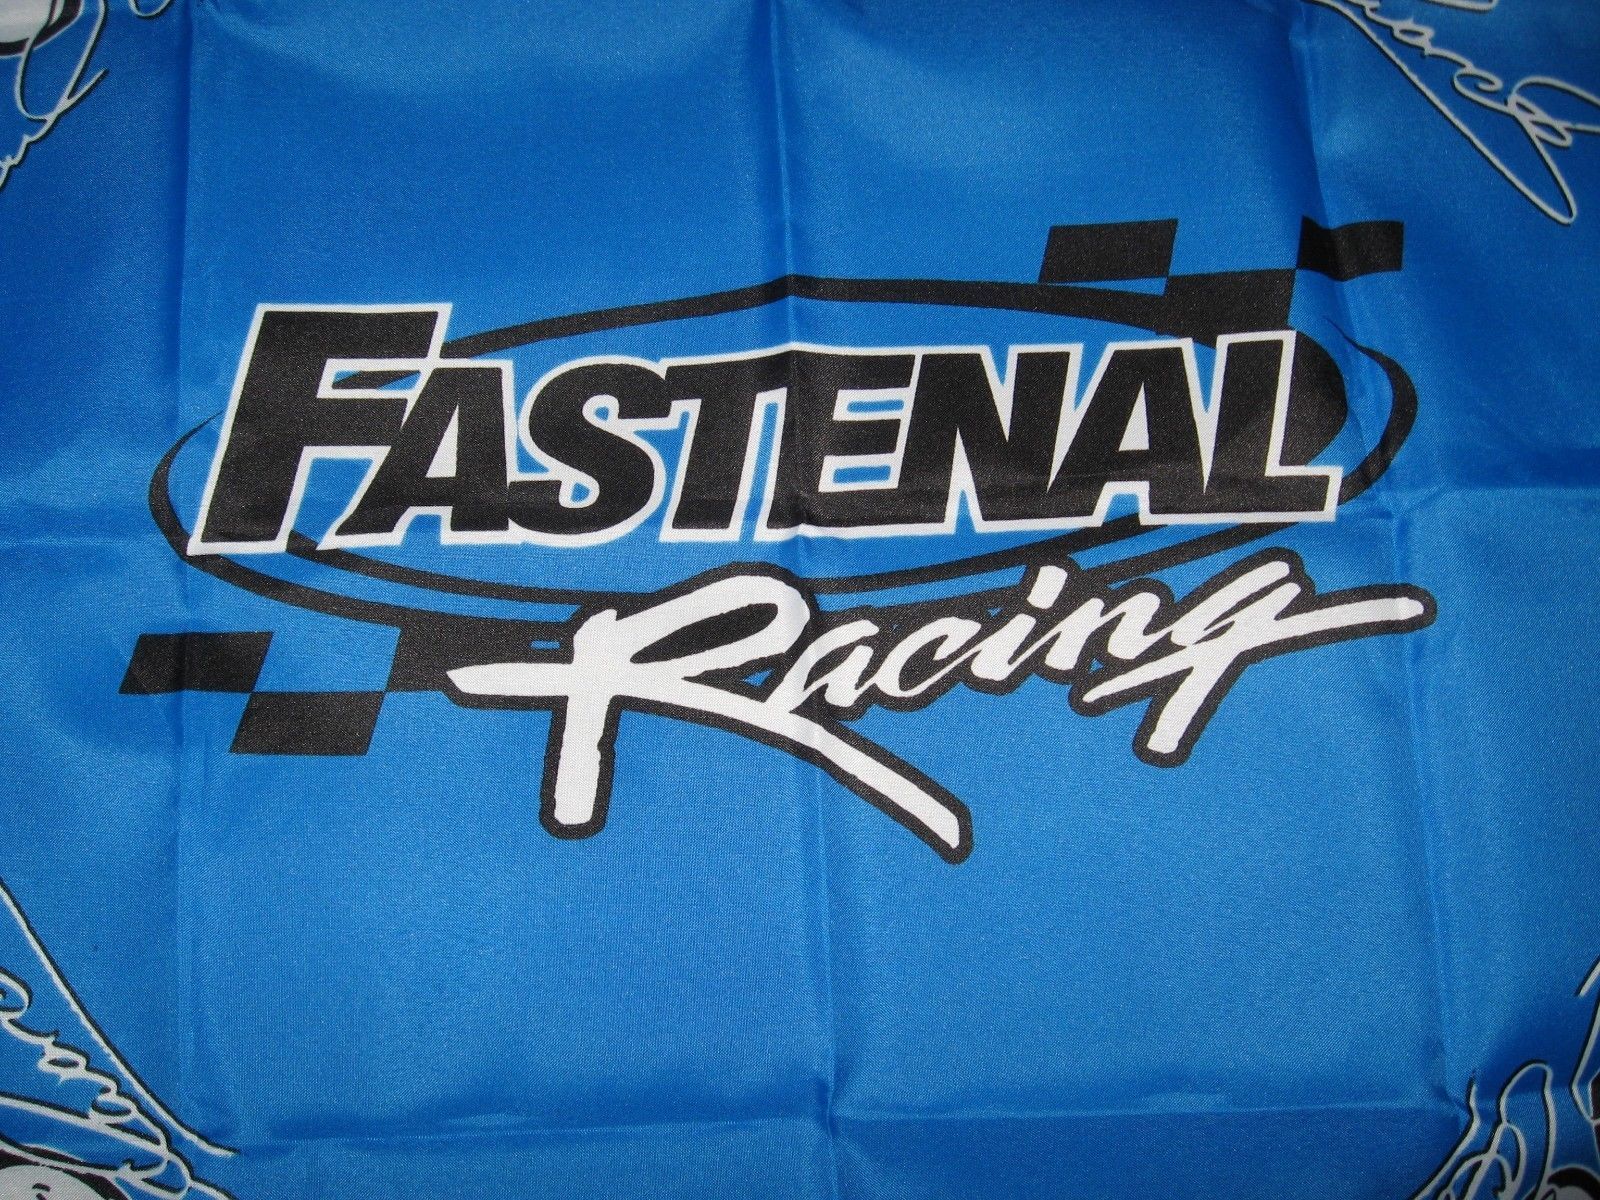 Carl Edwards Fastenal Racing #60 NASCAR Race Car Driver Bandana ...